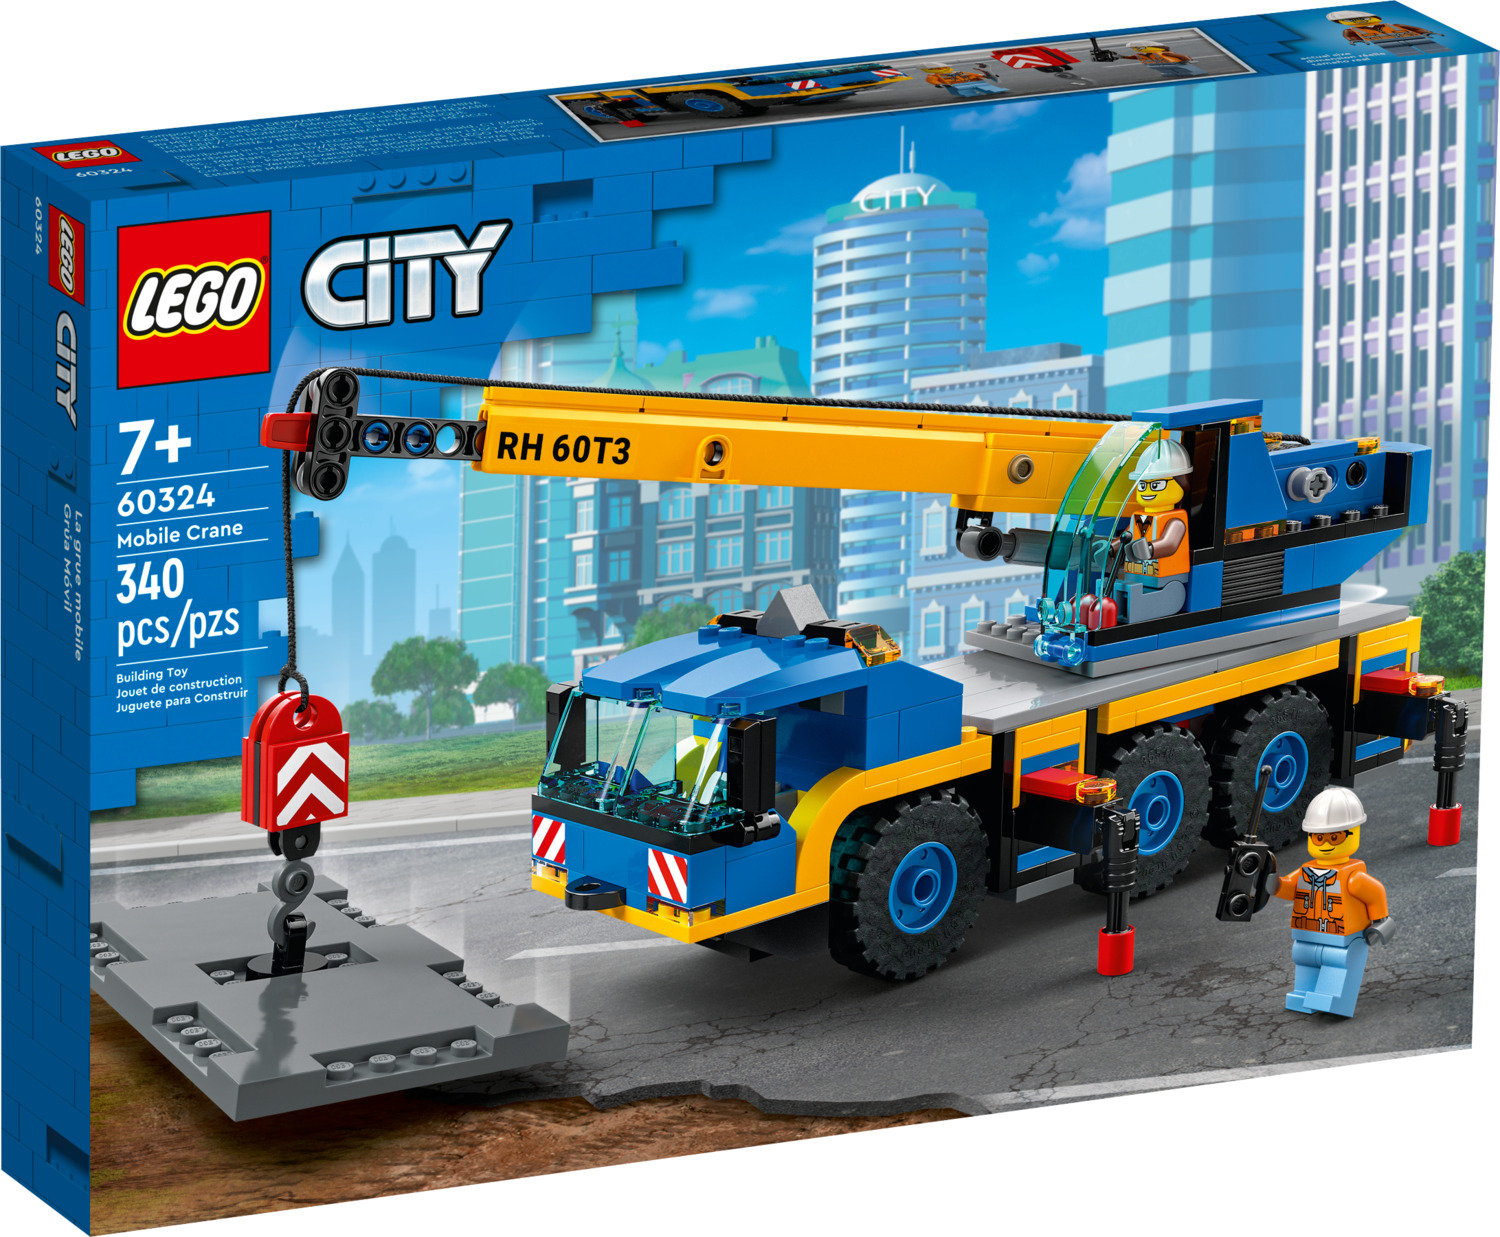 LEGO City: Mobile Crane - LEGO - Dancing Bear Toys